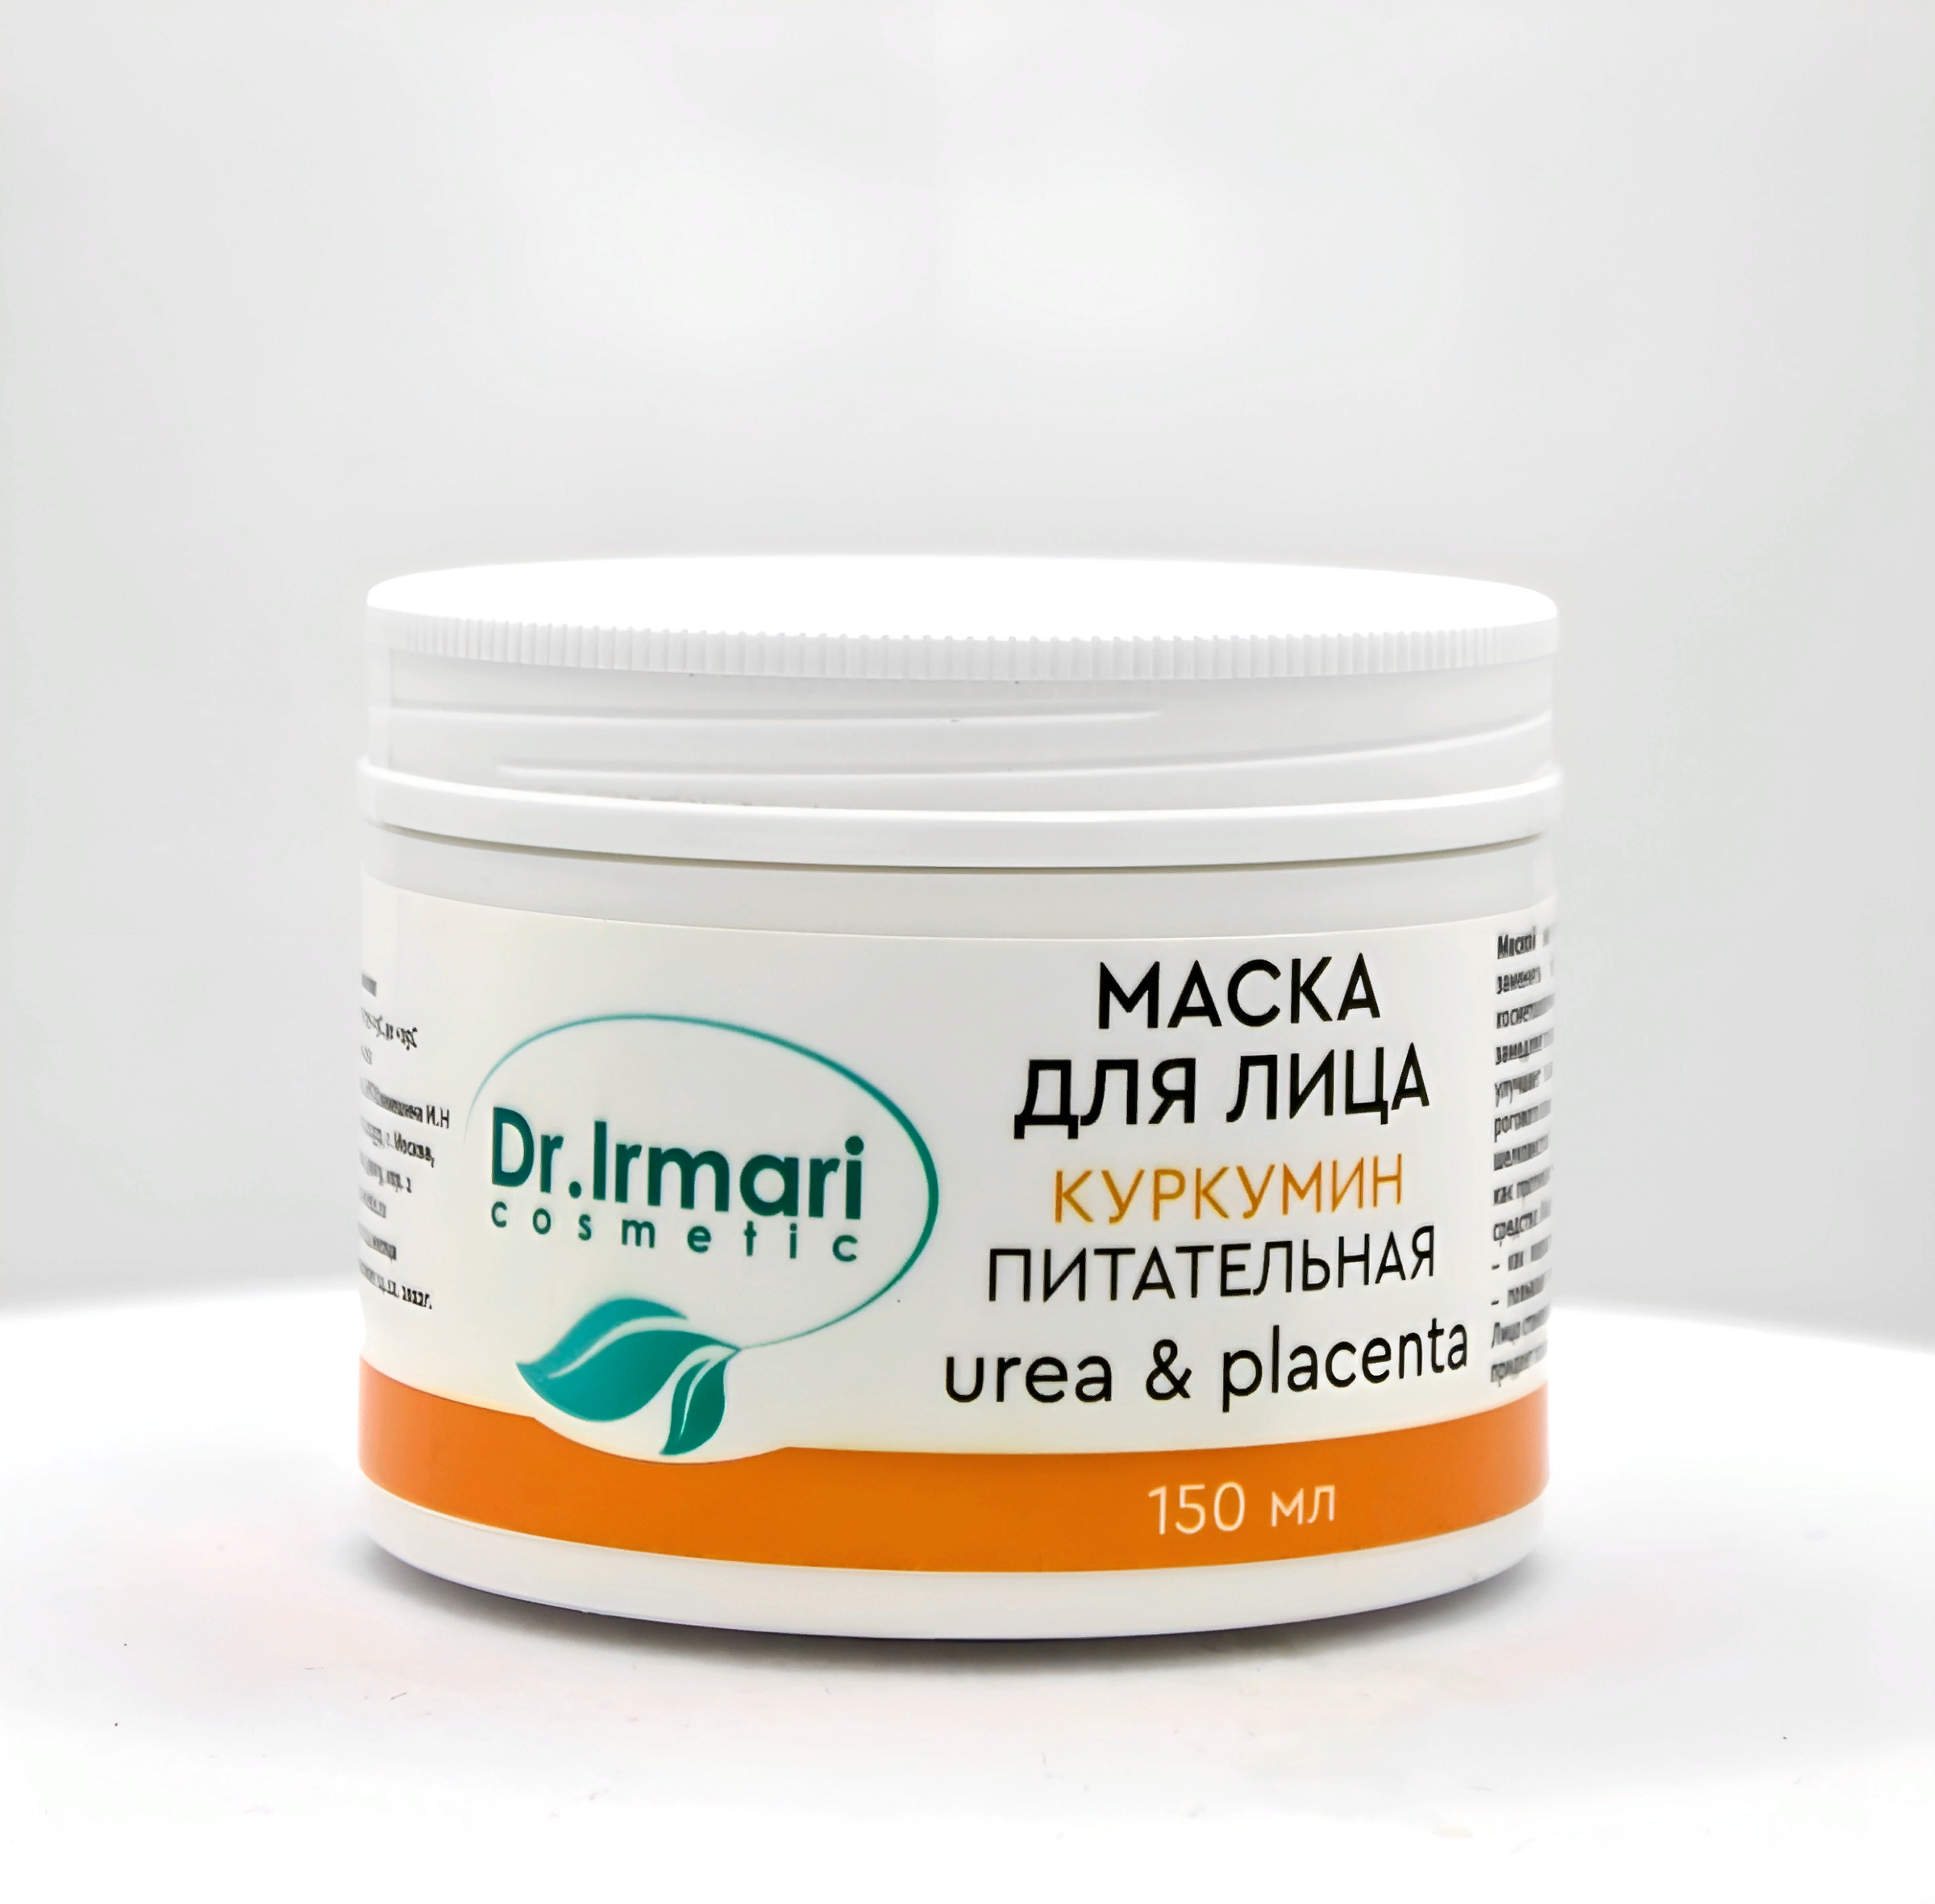 Маска для лица Dr.Irmari cosmetic Urea & Placenta Куркумин питательная 150 мл